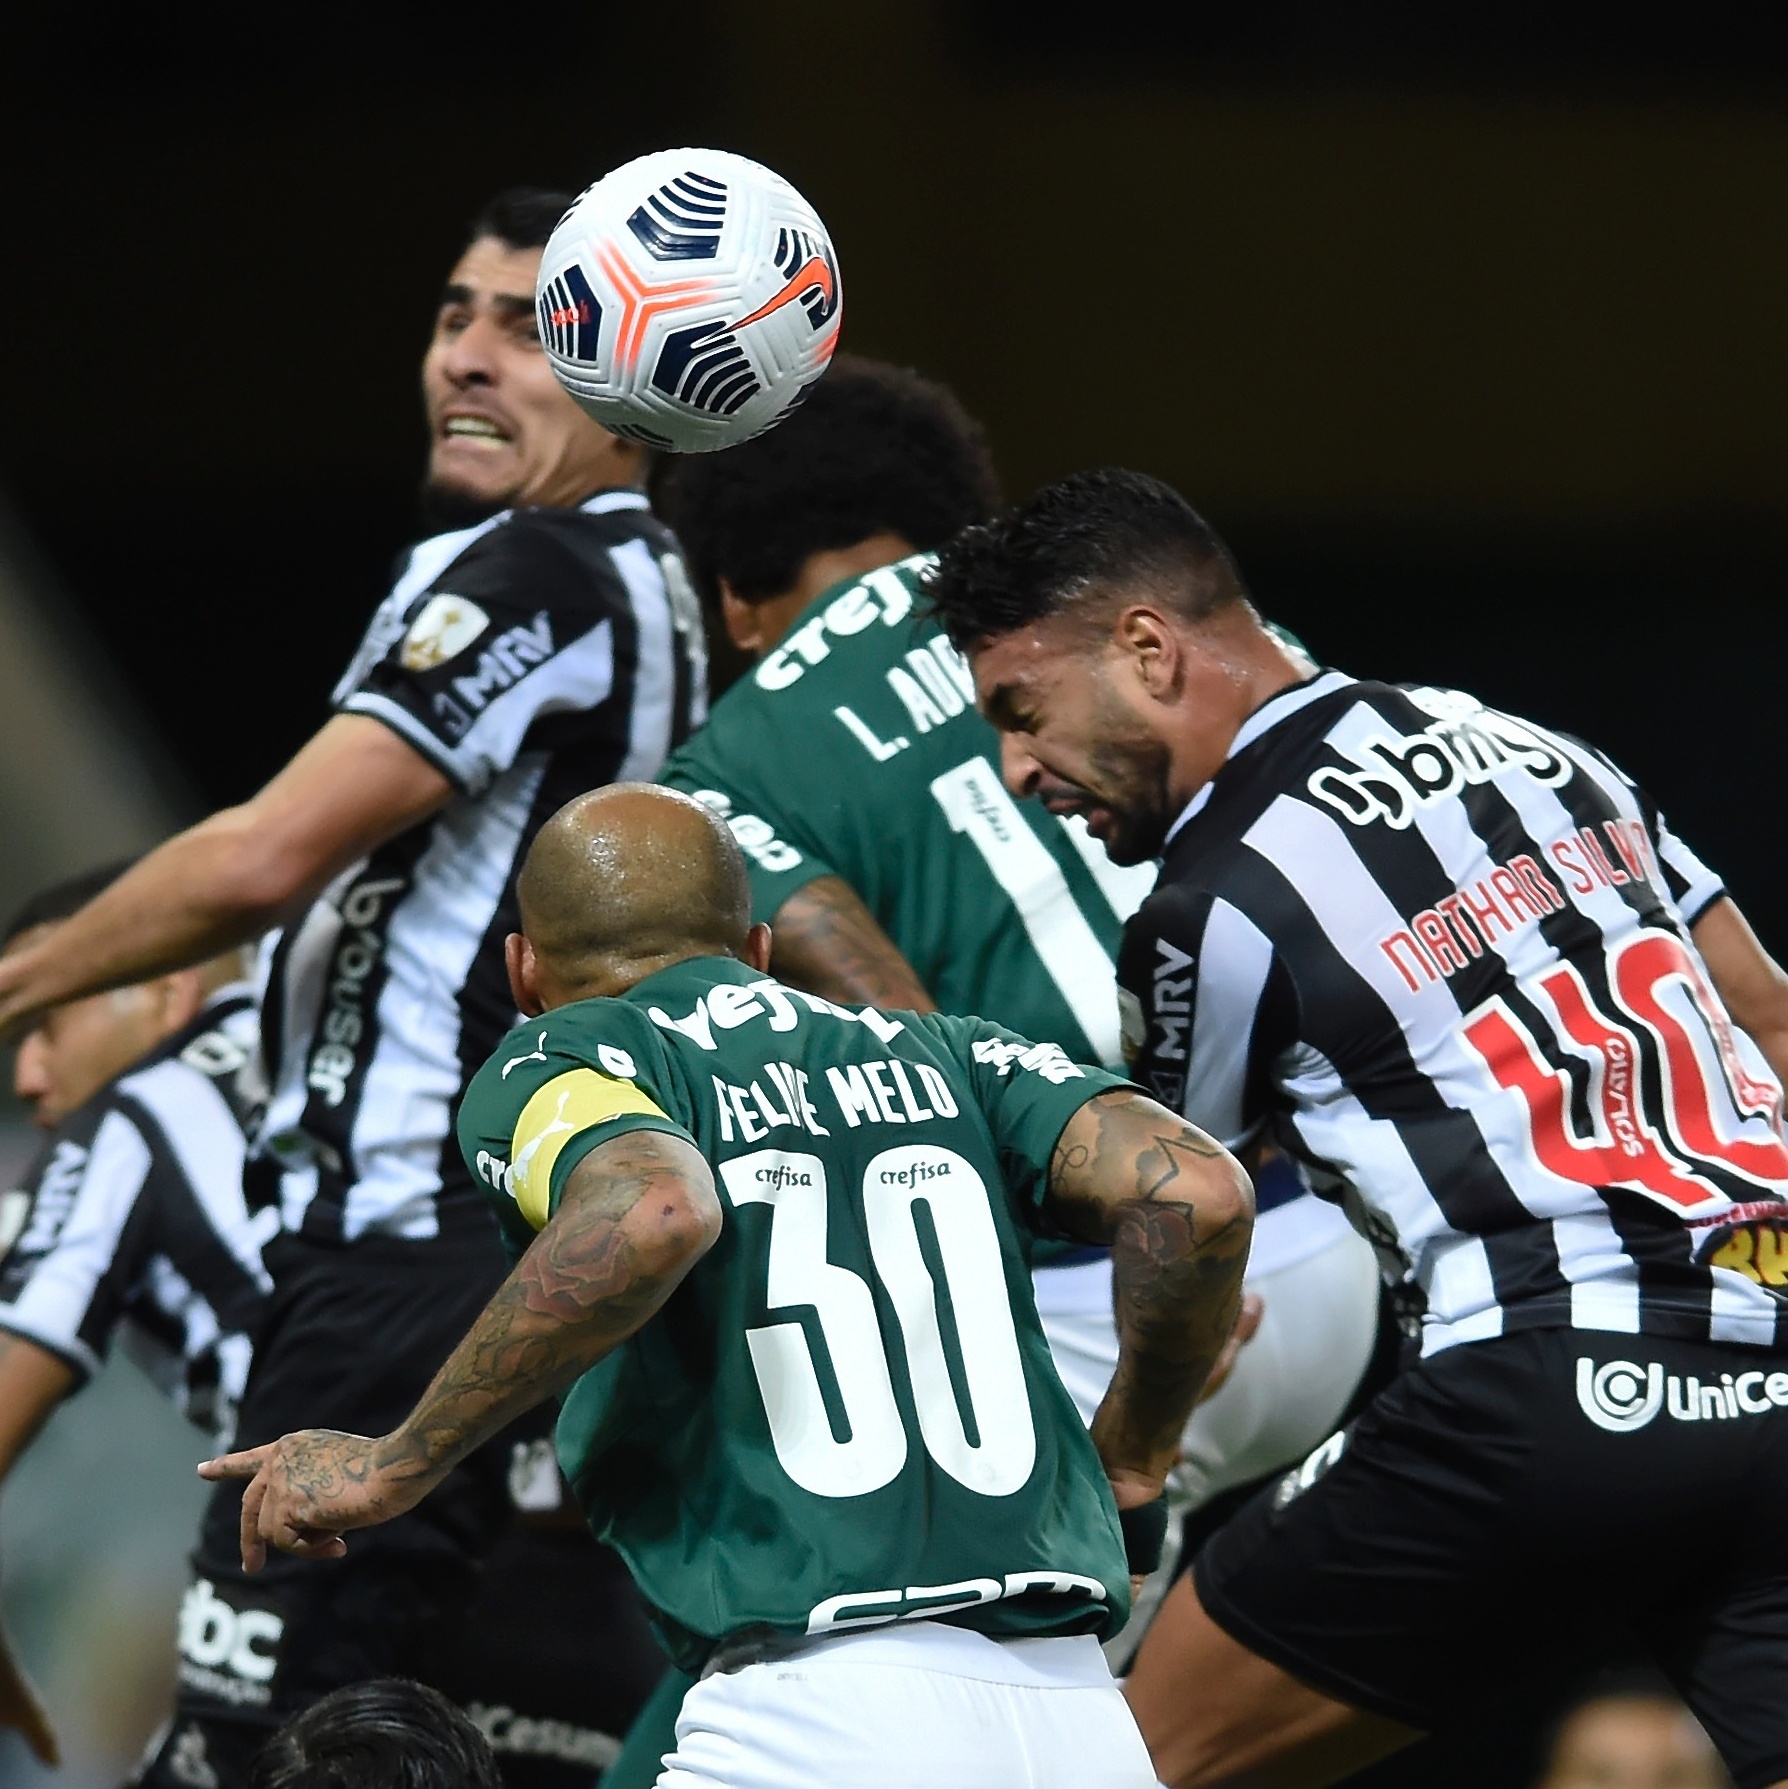 VÍDEO: Maurício fala sobre duelo decisivo na Libertadores: 'Maior